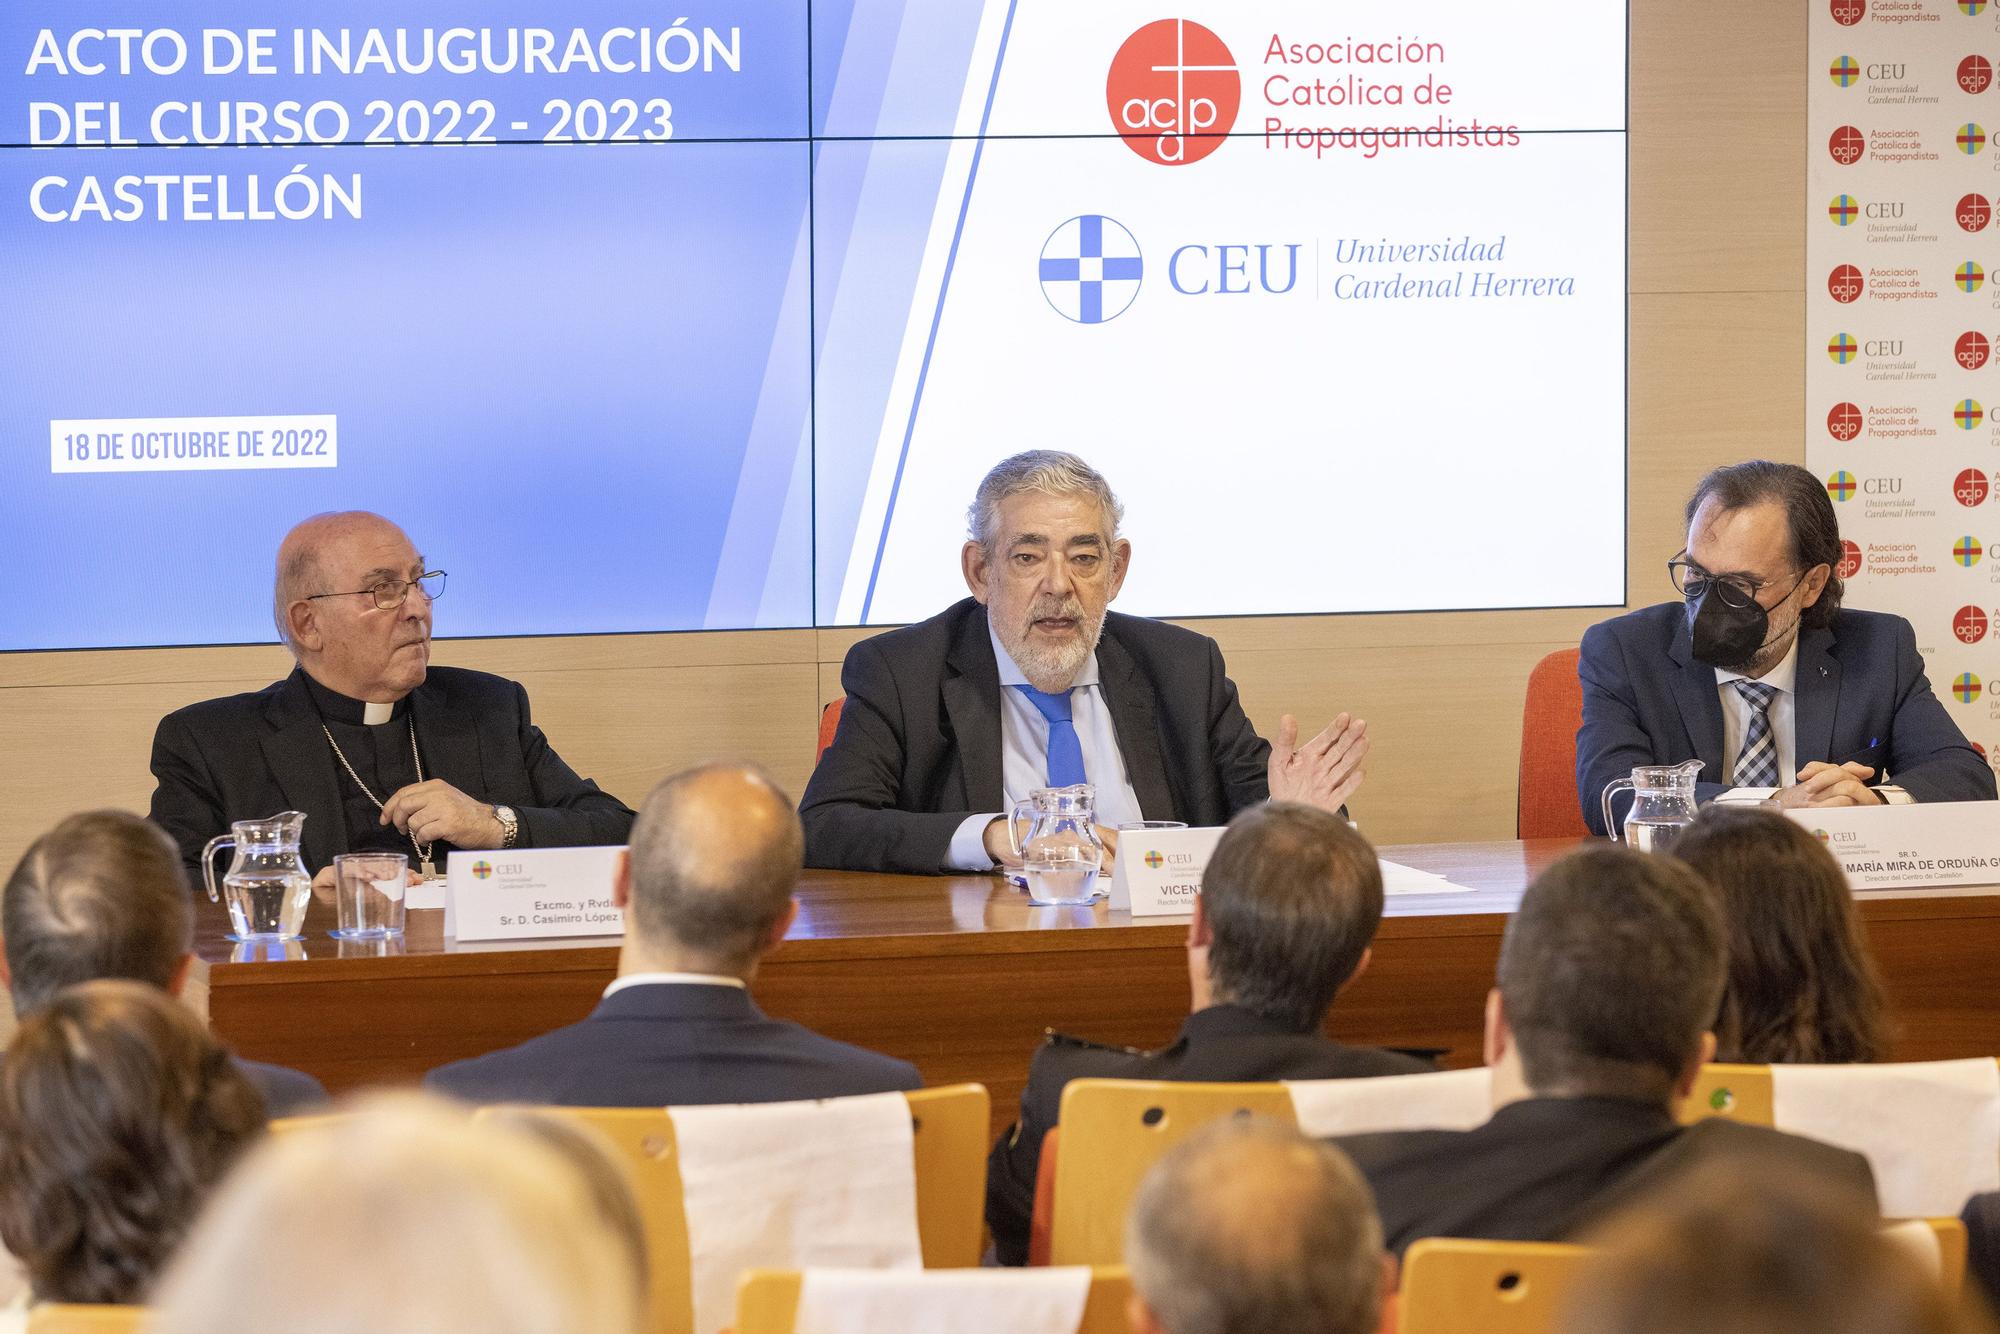 Acto de inauguración del curso de la Universidad Cardenal Herrera CEU